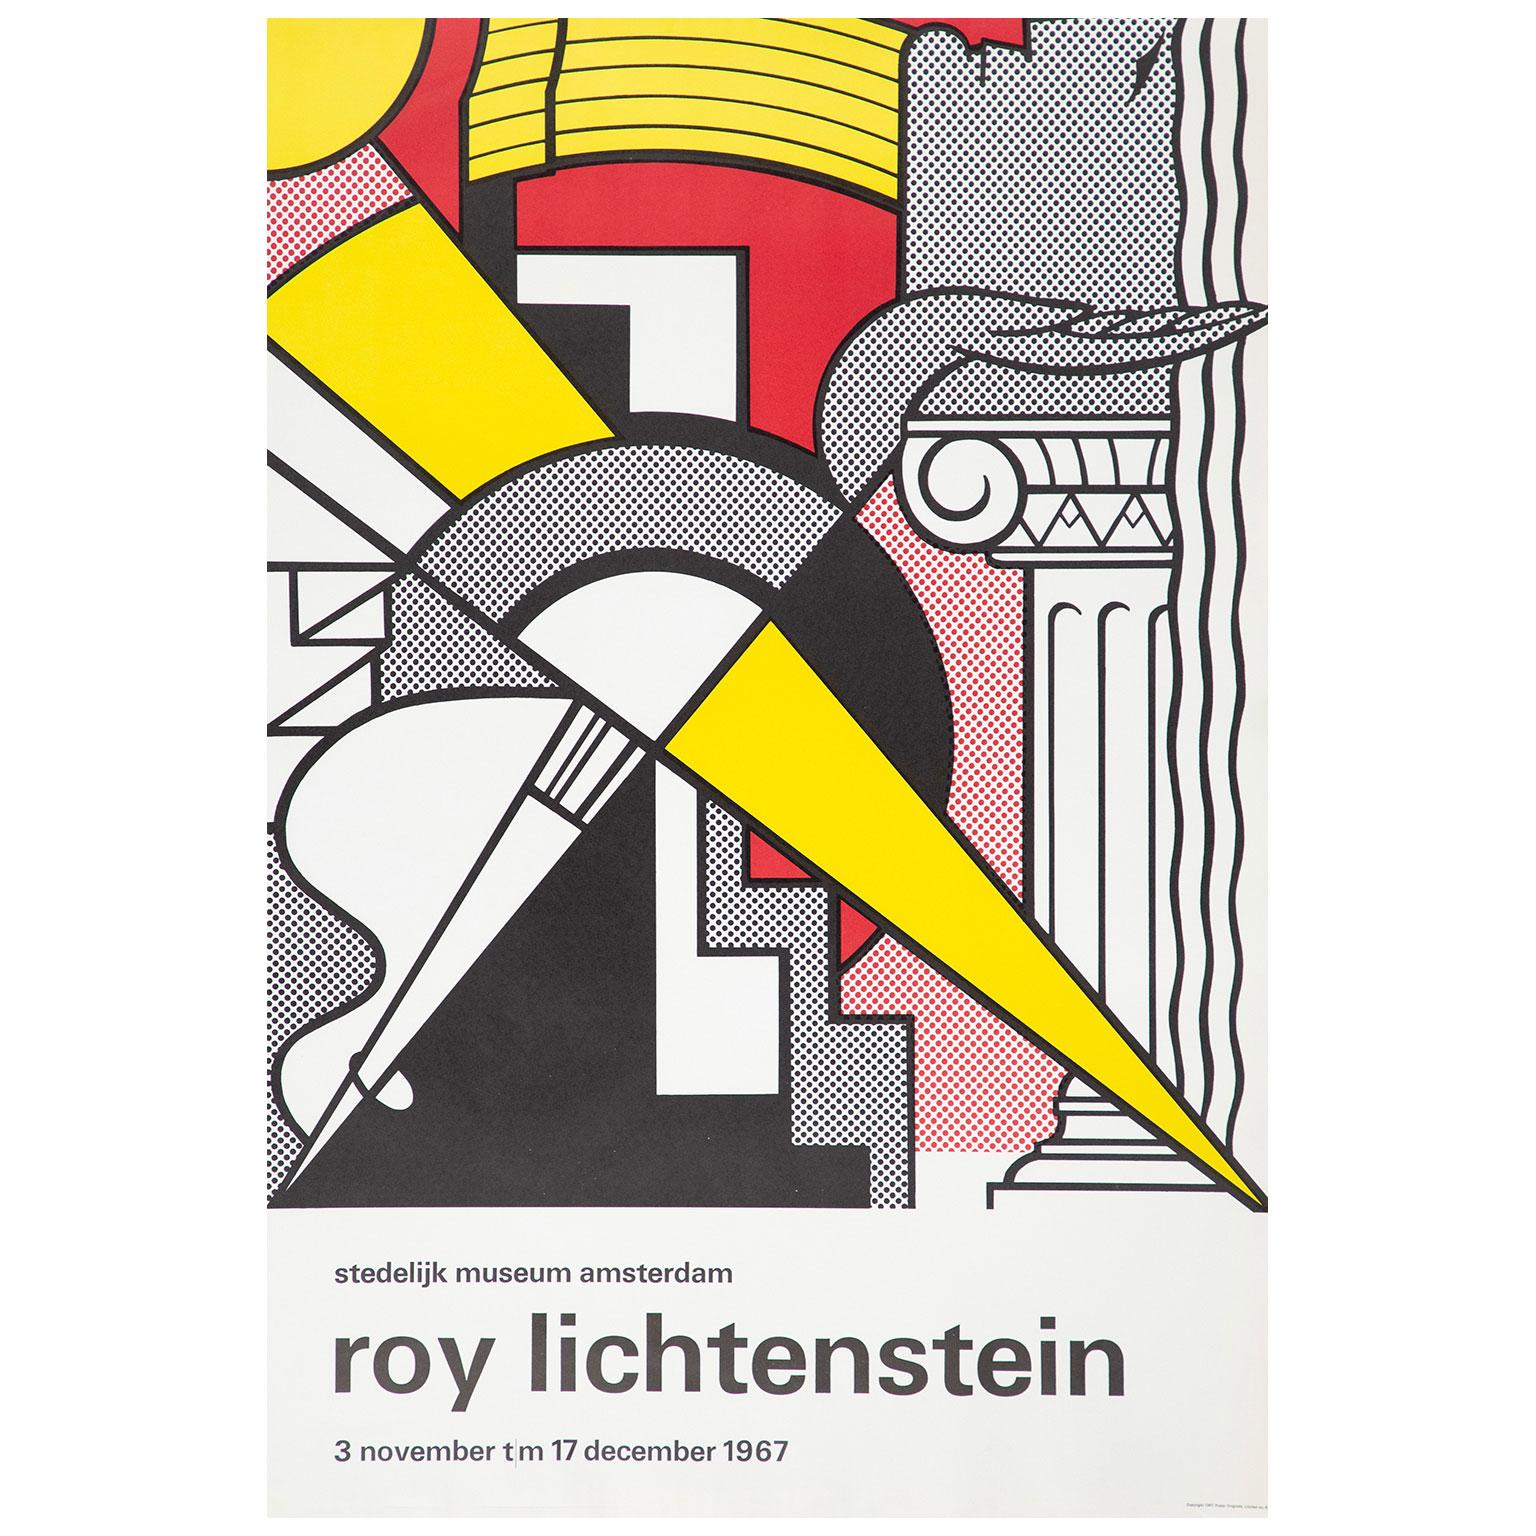 Roy Lichtenstein Abstract Print - Stedelijk Museum Amsterdam